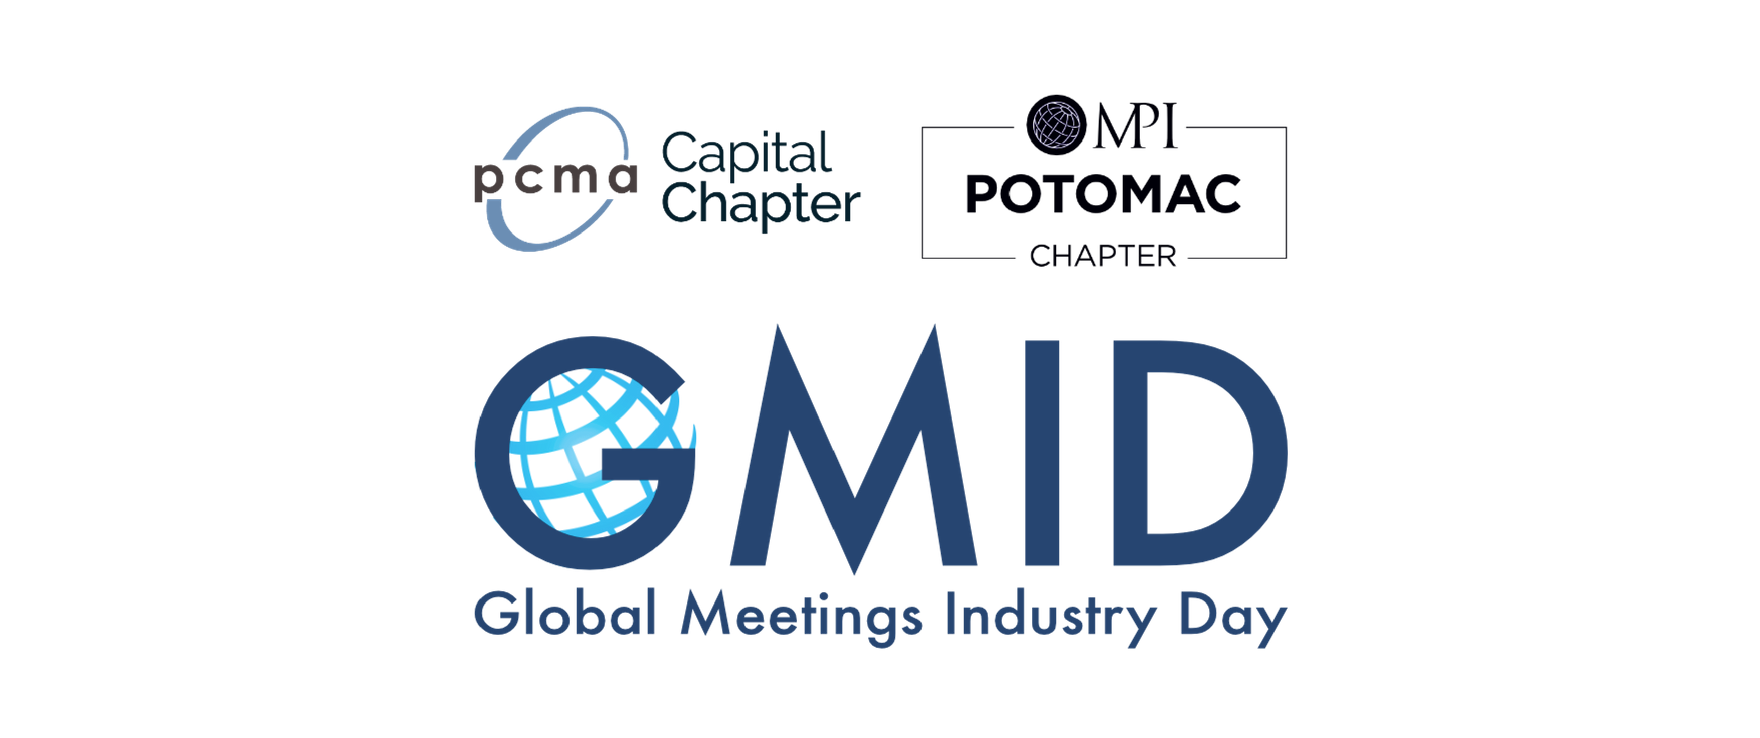 2019 Global Meetings Industry Day